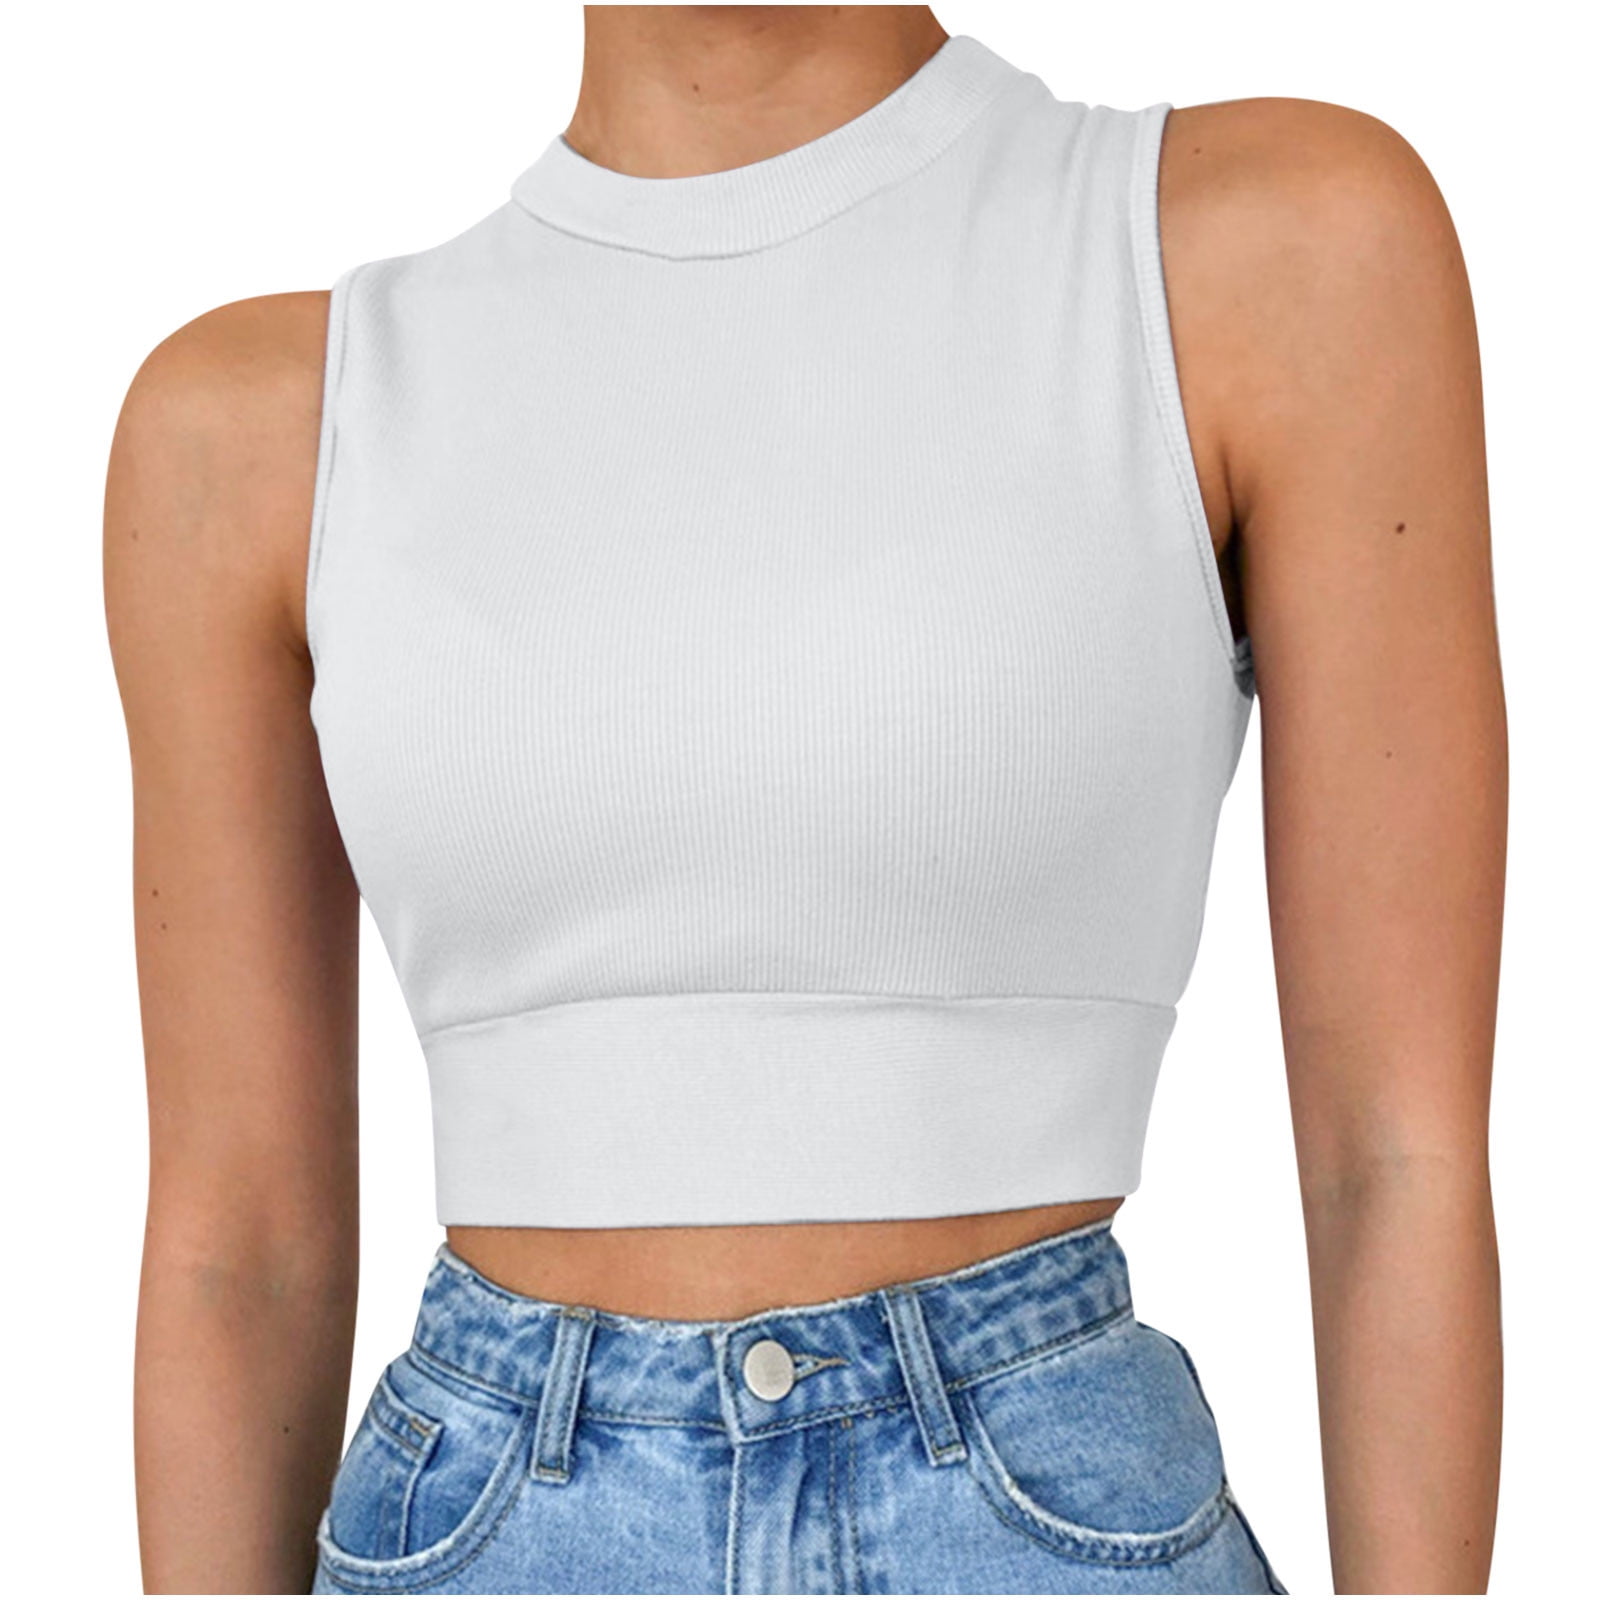 KIJBLAE Teen Girls Tee Shirts Solid Camisole Cozy Clothes Summer